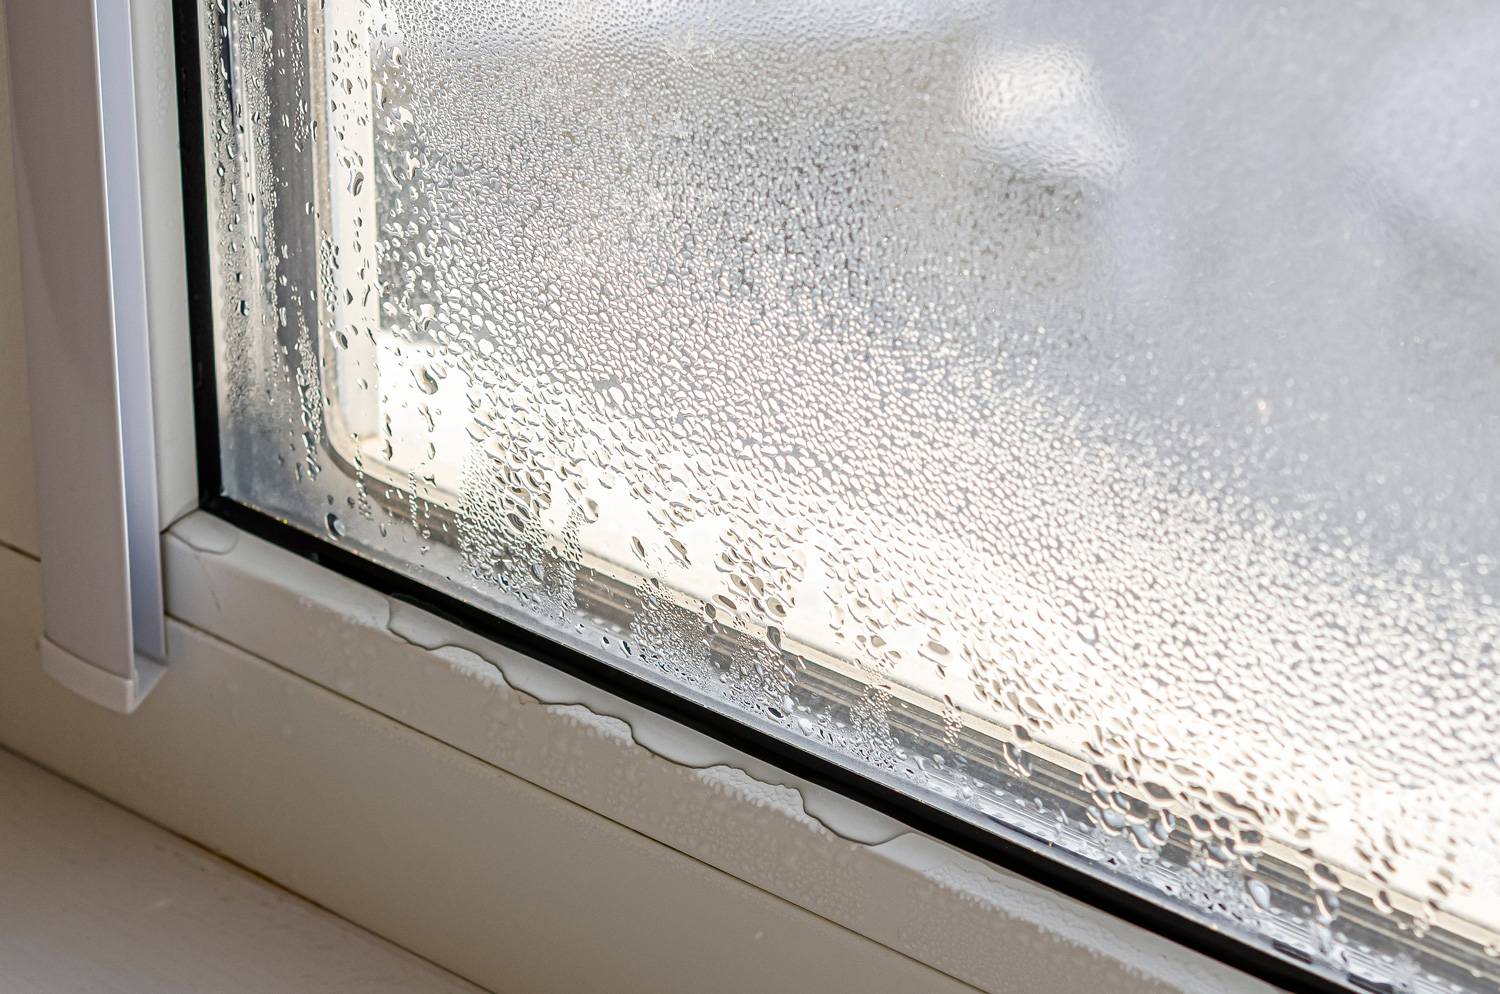 La condensation dans une maison : mauvais pour la santé